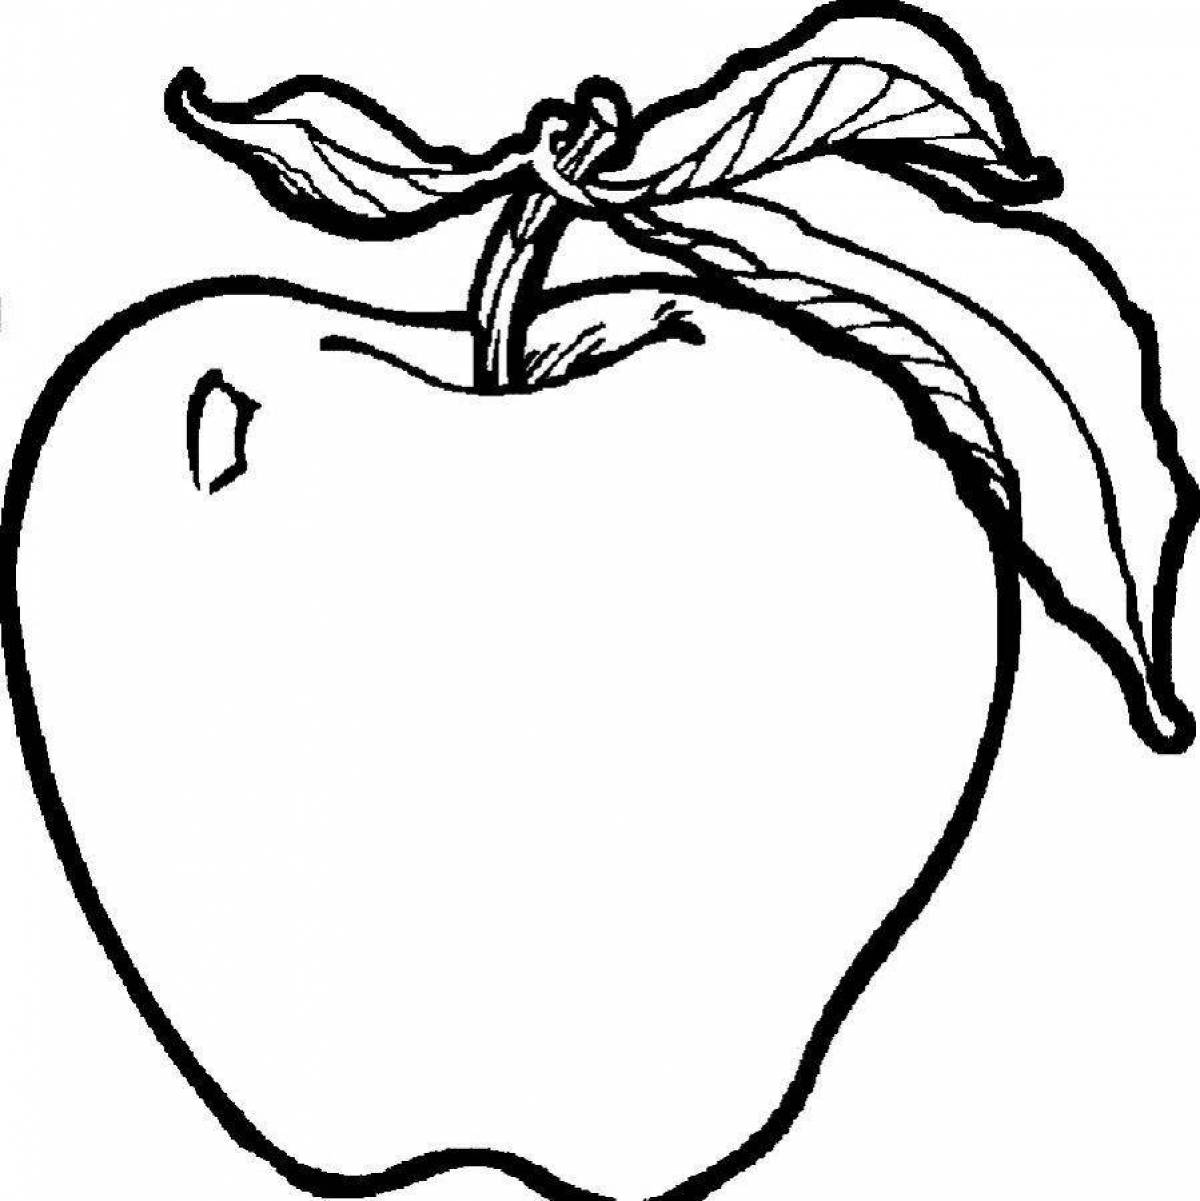 Яркая яблочная раскраска для детей